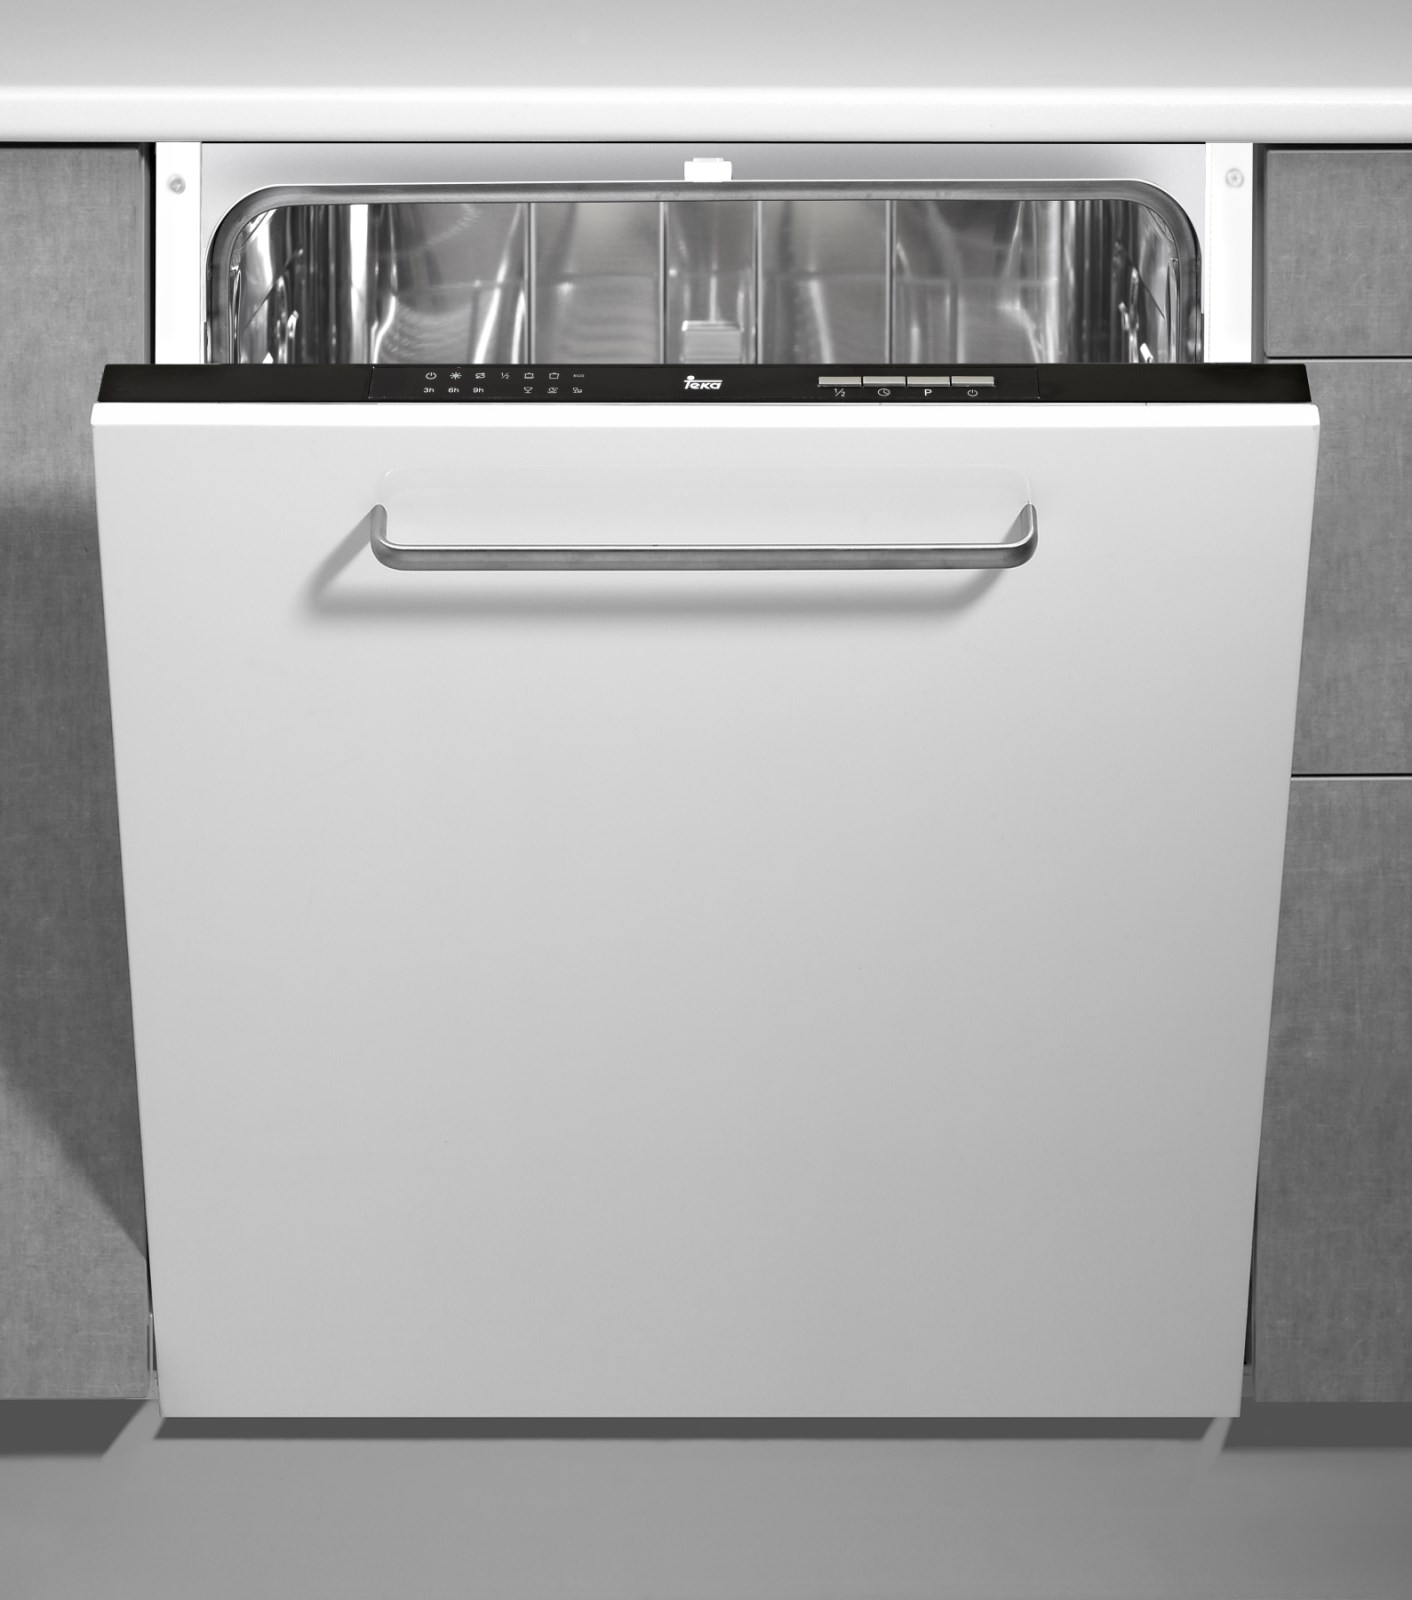 Встраиваемая посудомоечная машина Teka DW1 605 FI